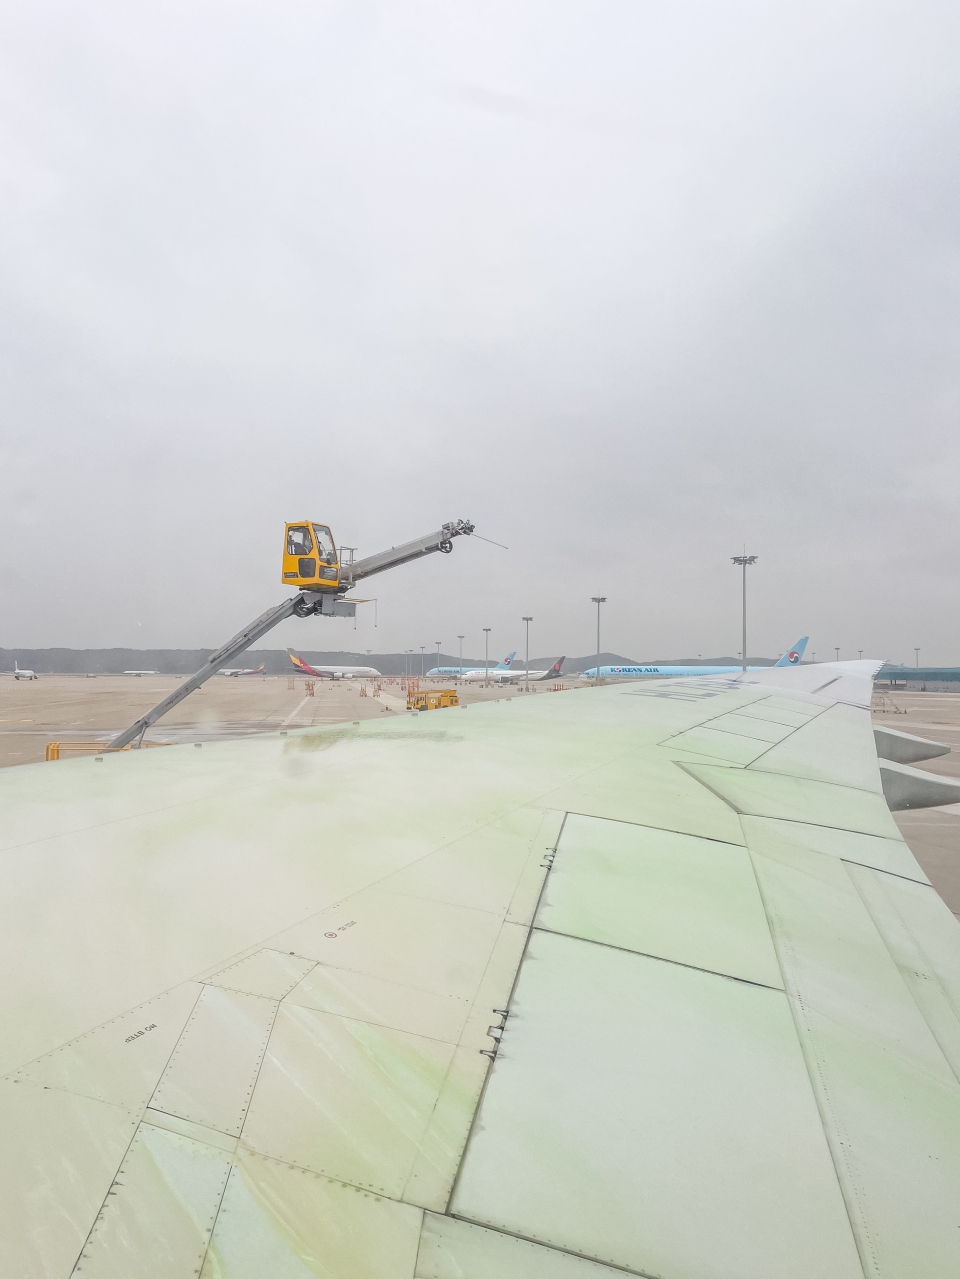 대한항공 에어프랑스 타고 독일여행 : 파리 샤를드골 공항 환승 최악 위탁수하물 분실